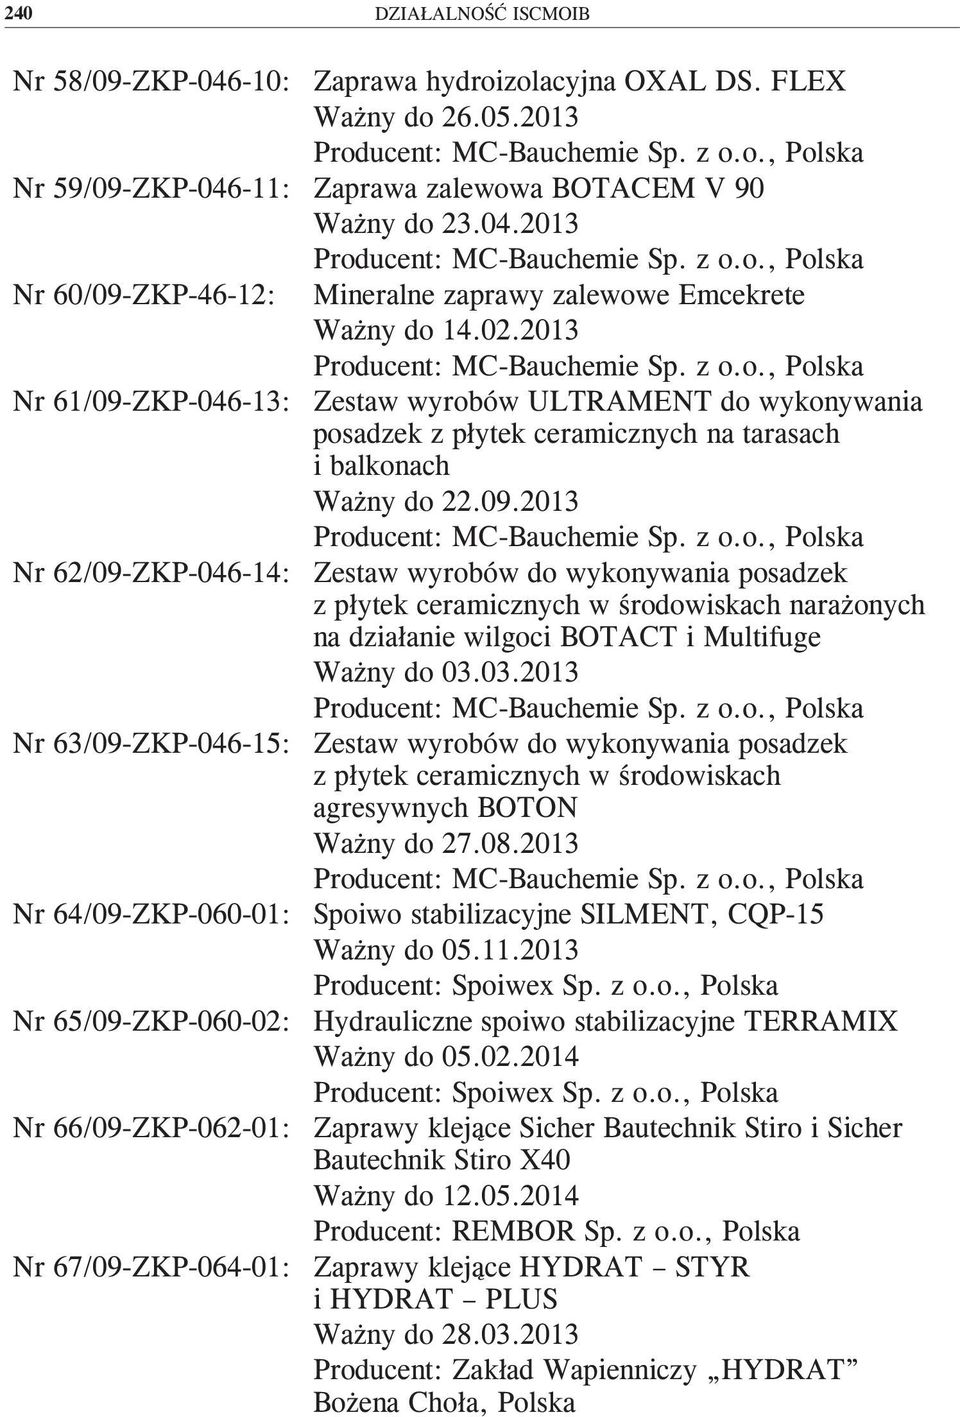 03.2013 Nr 63/09-ZKP-046-15: Zestaw wyrobów do wykonywania posadzek z płytek ceramicznych w środowiskach agresywnych BOTON Ważny do 27.08.